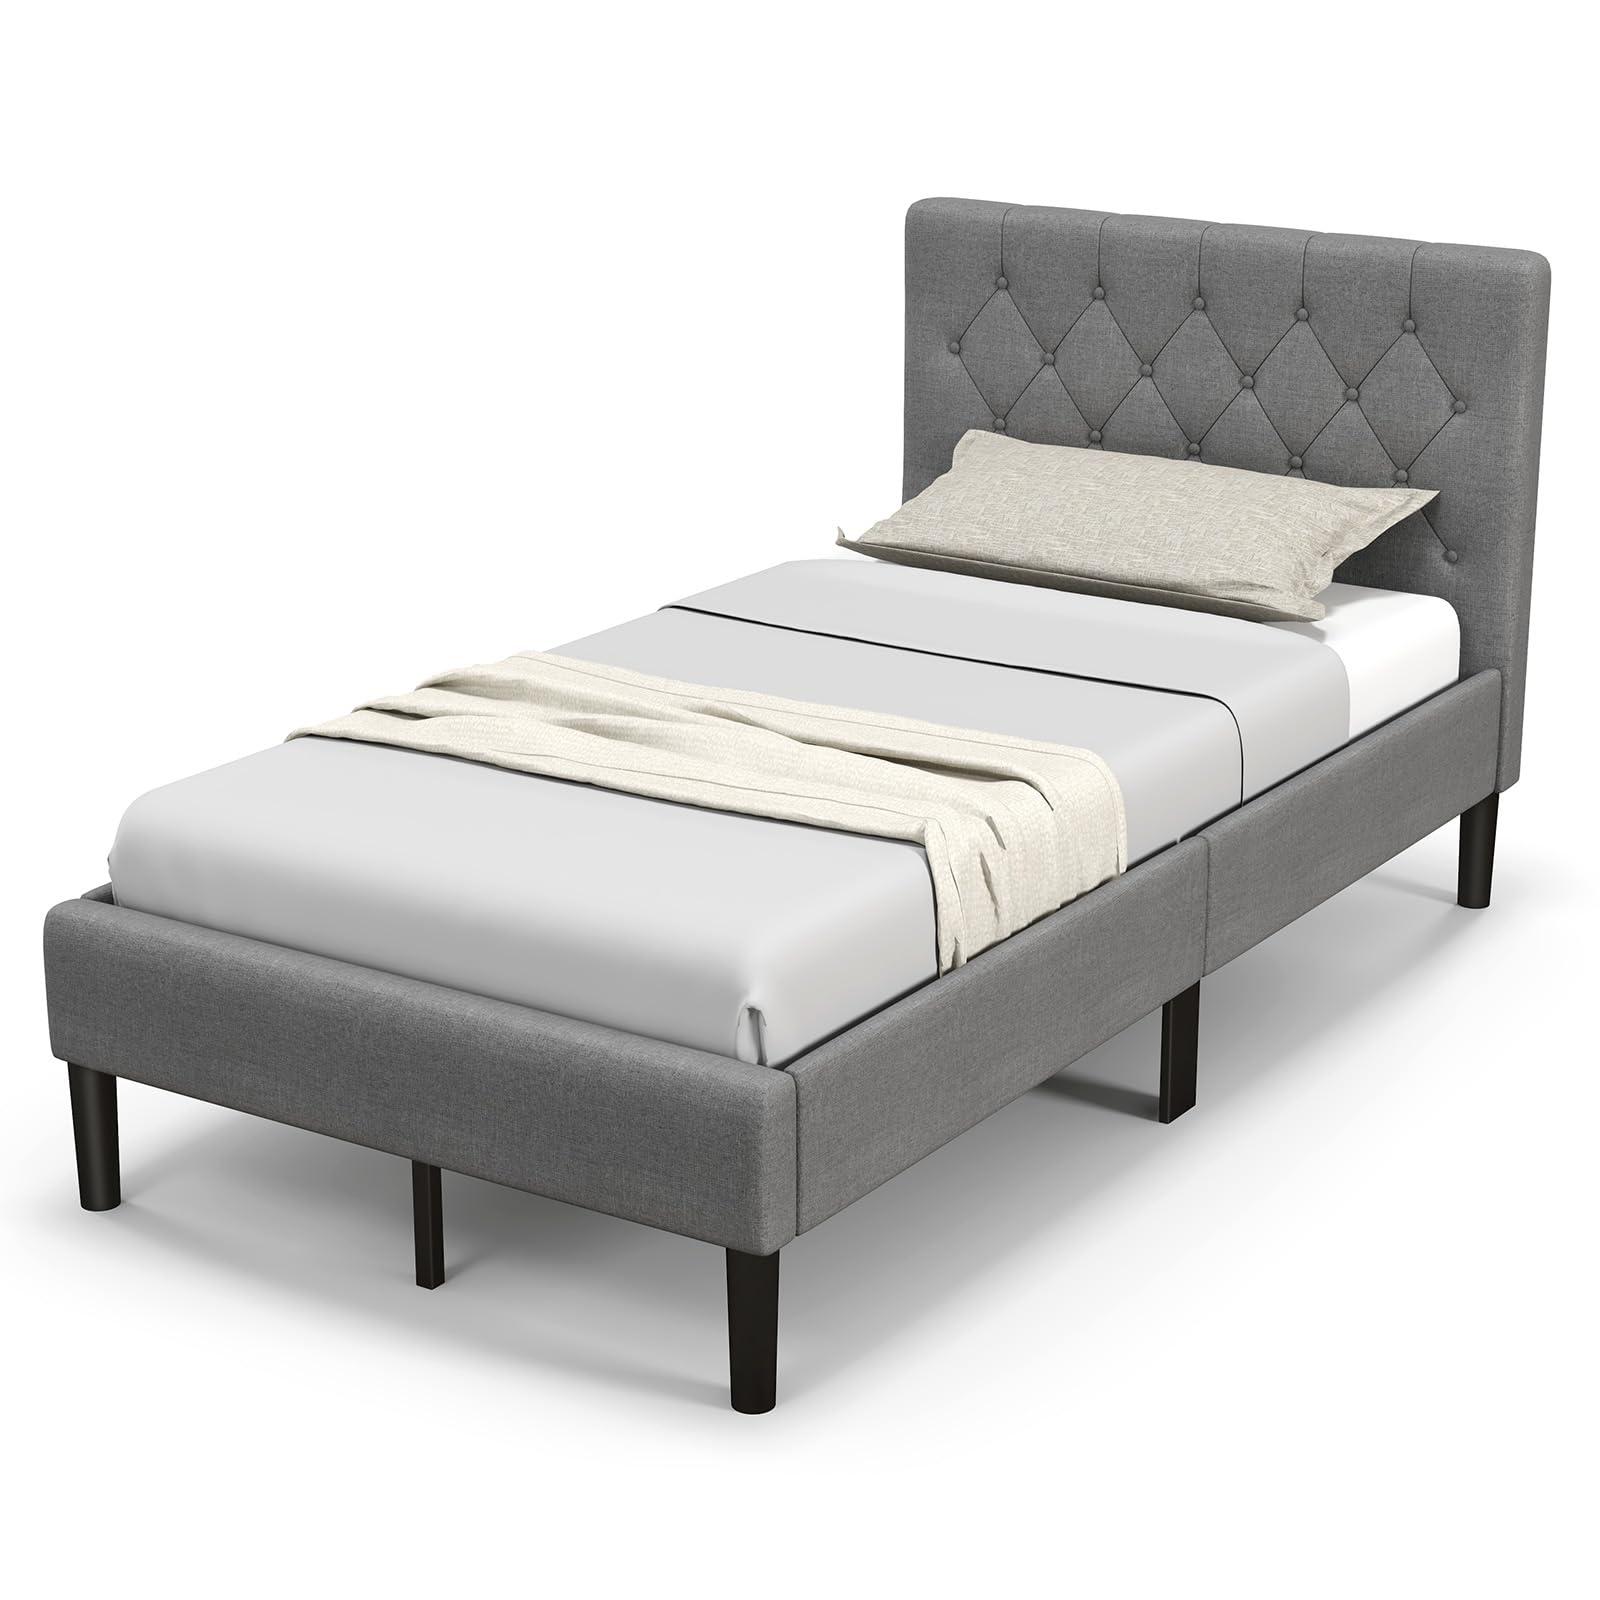 Giantex Upholstered Bed Frame